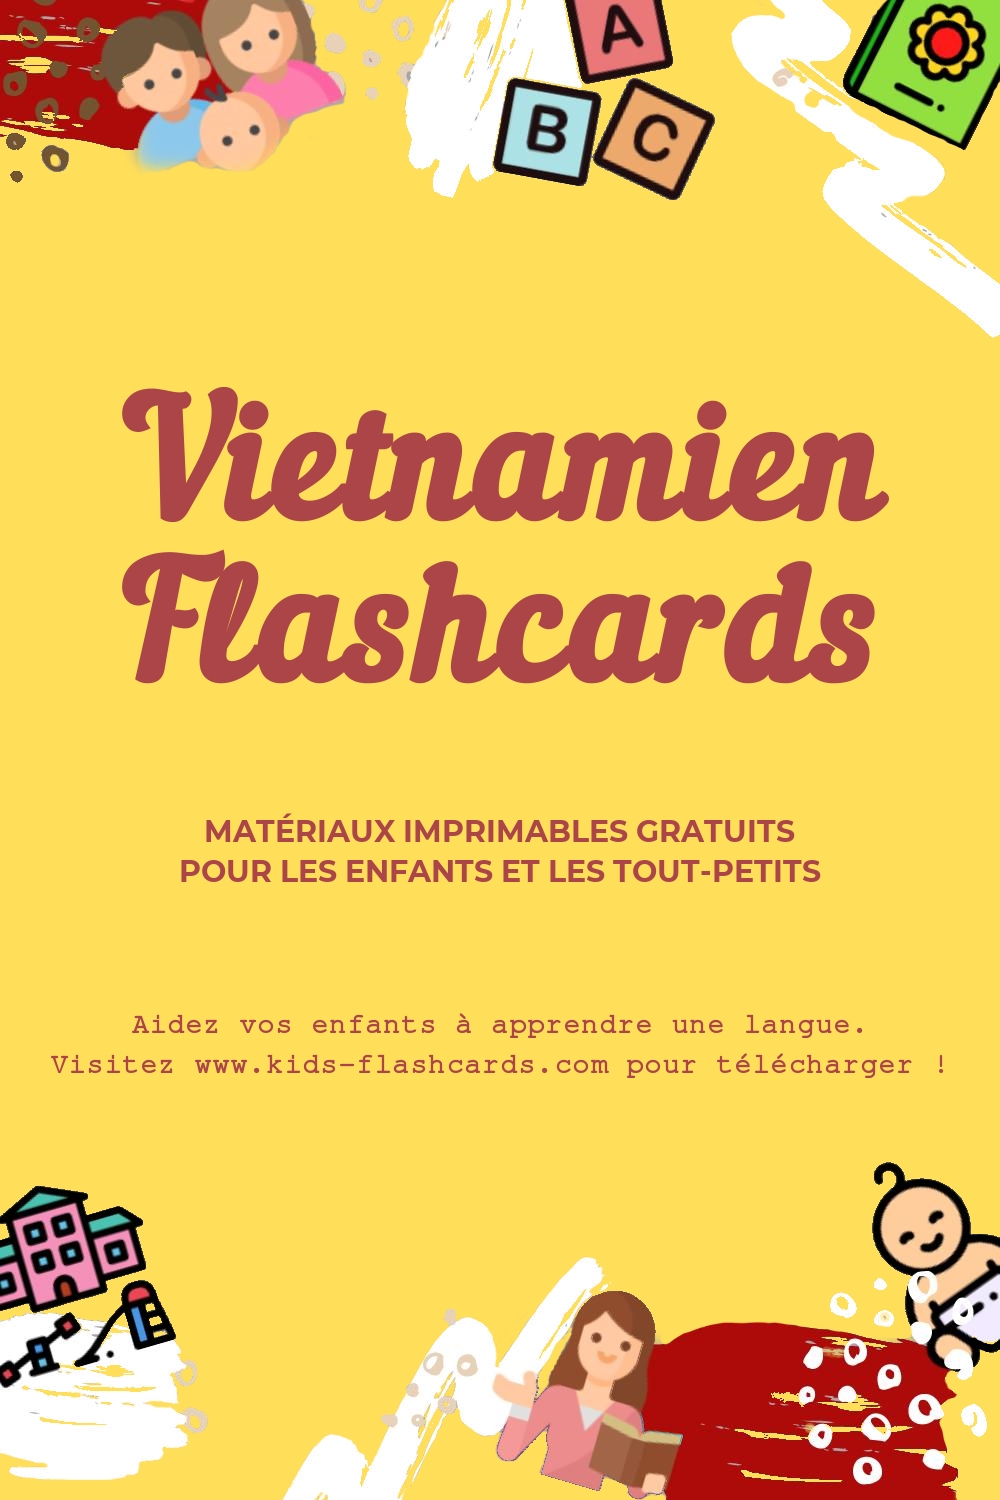 Fiches d'exercices pour apprendre la langue Vietnamien